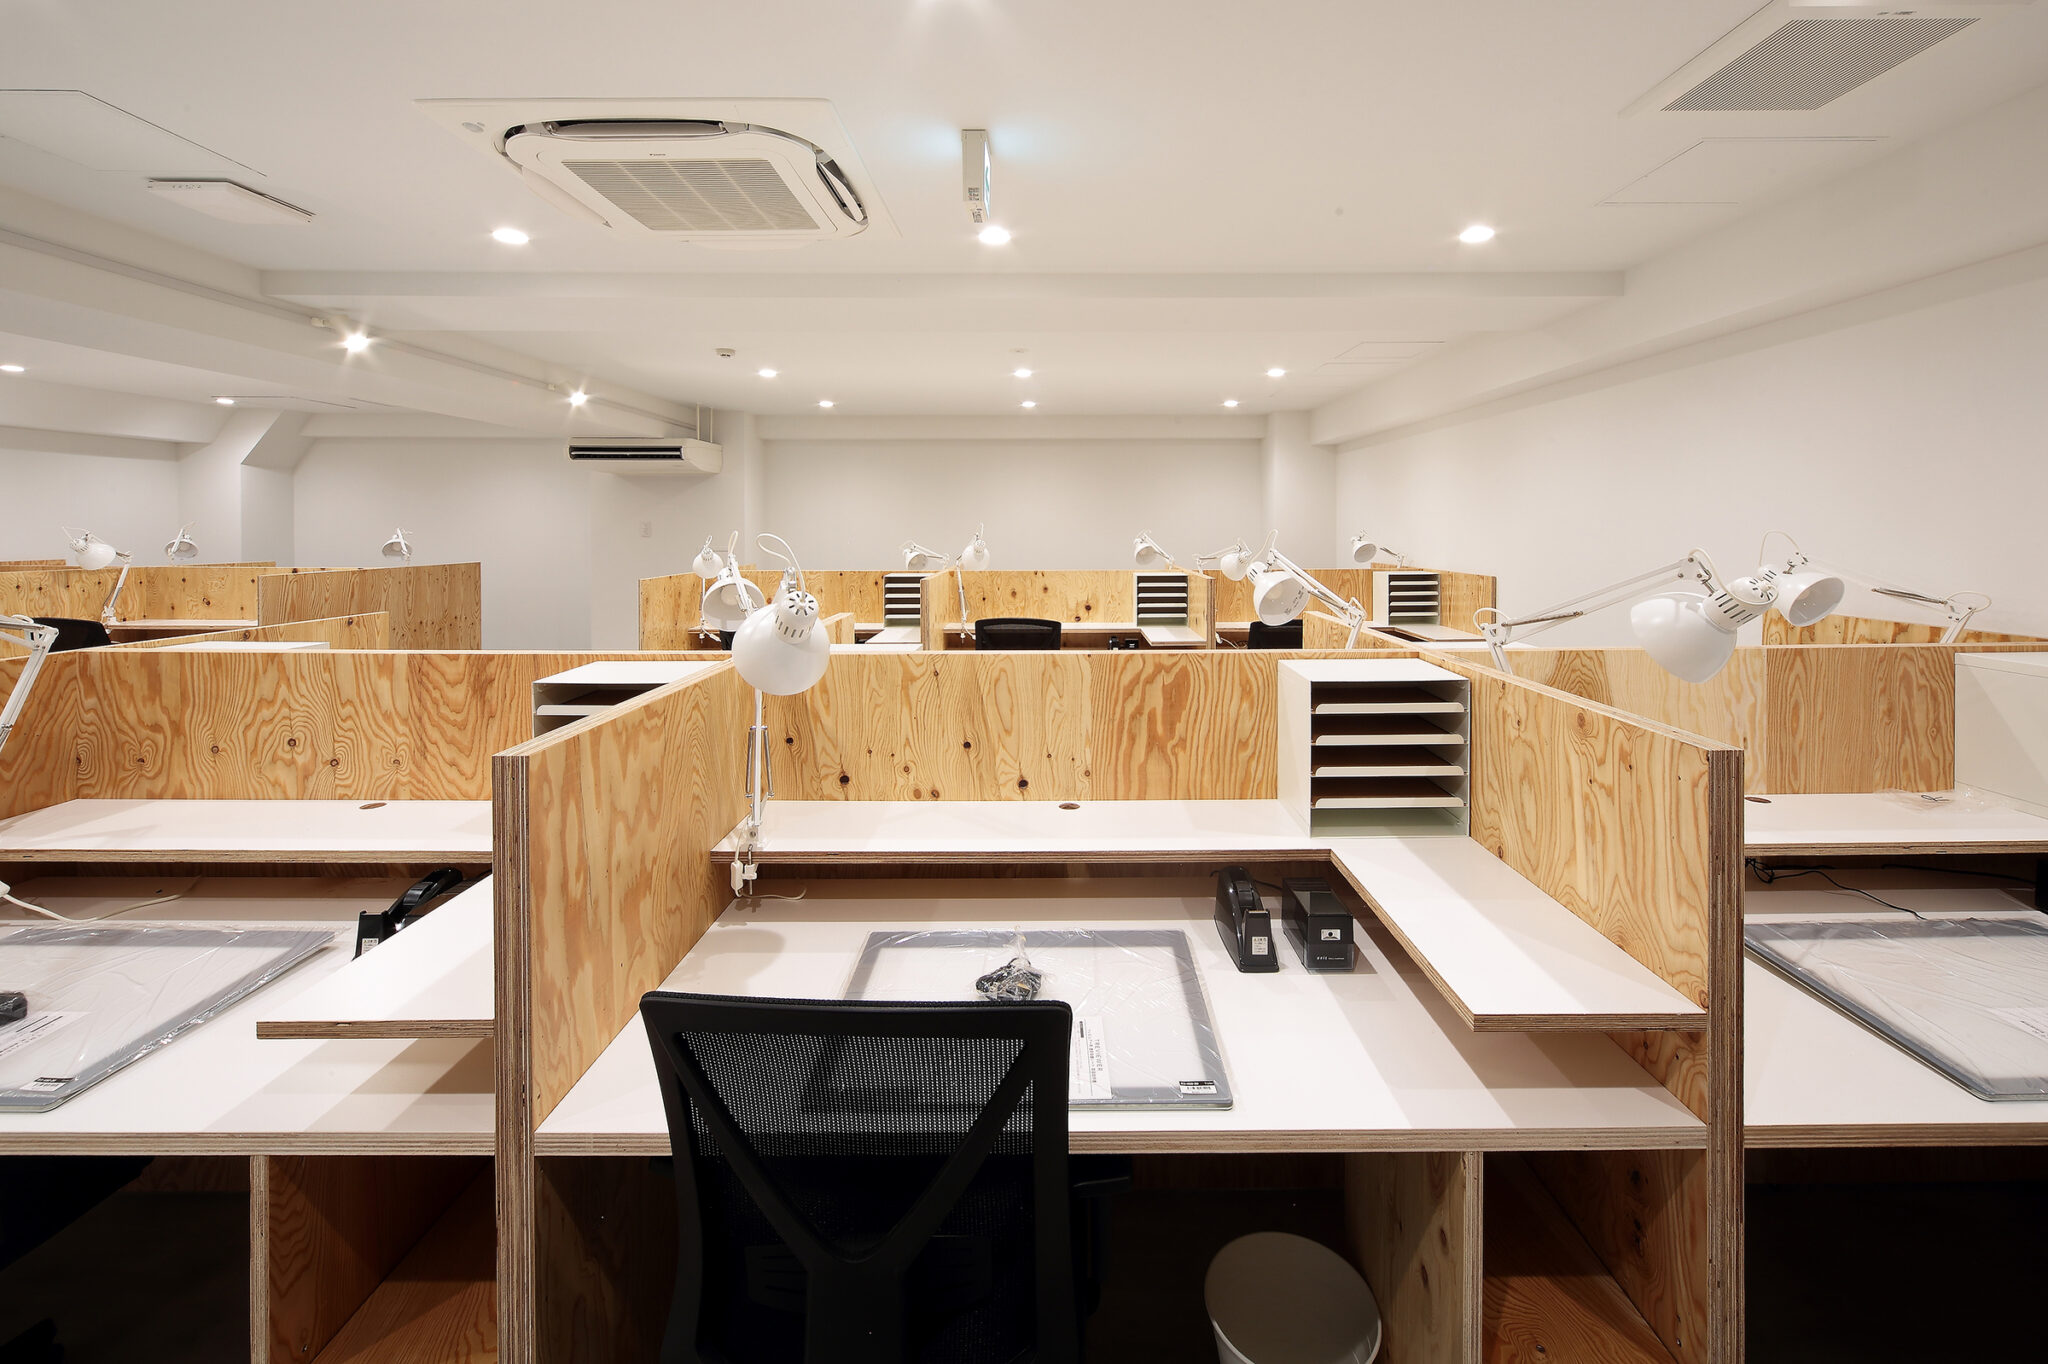 小山光 Key Operation Inc Architectsによる 東京 杉並区の アニメーション制作会社のスタジオ Mappaスタジオ分室 職場環境の向上も意識しデスク素材の選定やラウンジ空間を重視 Architecturephoto Net